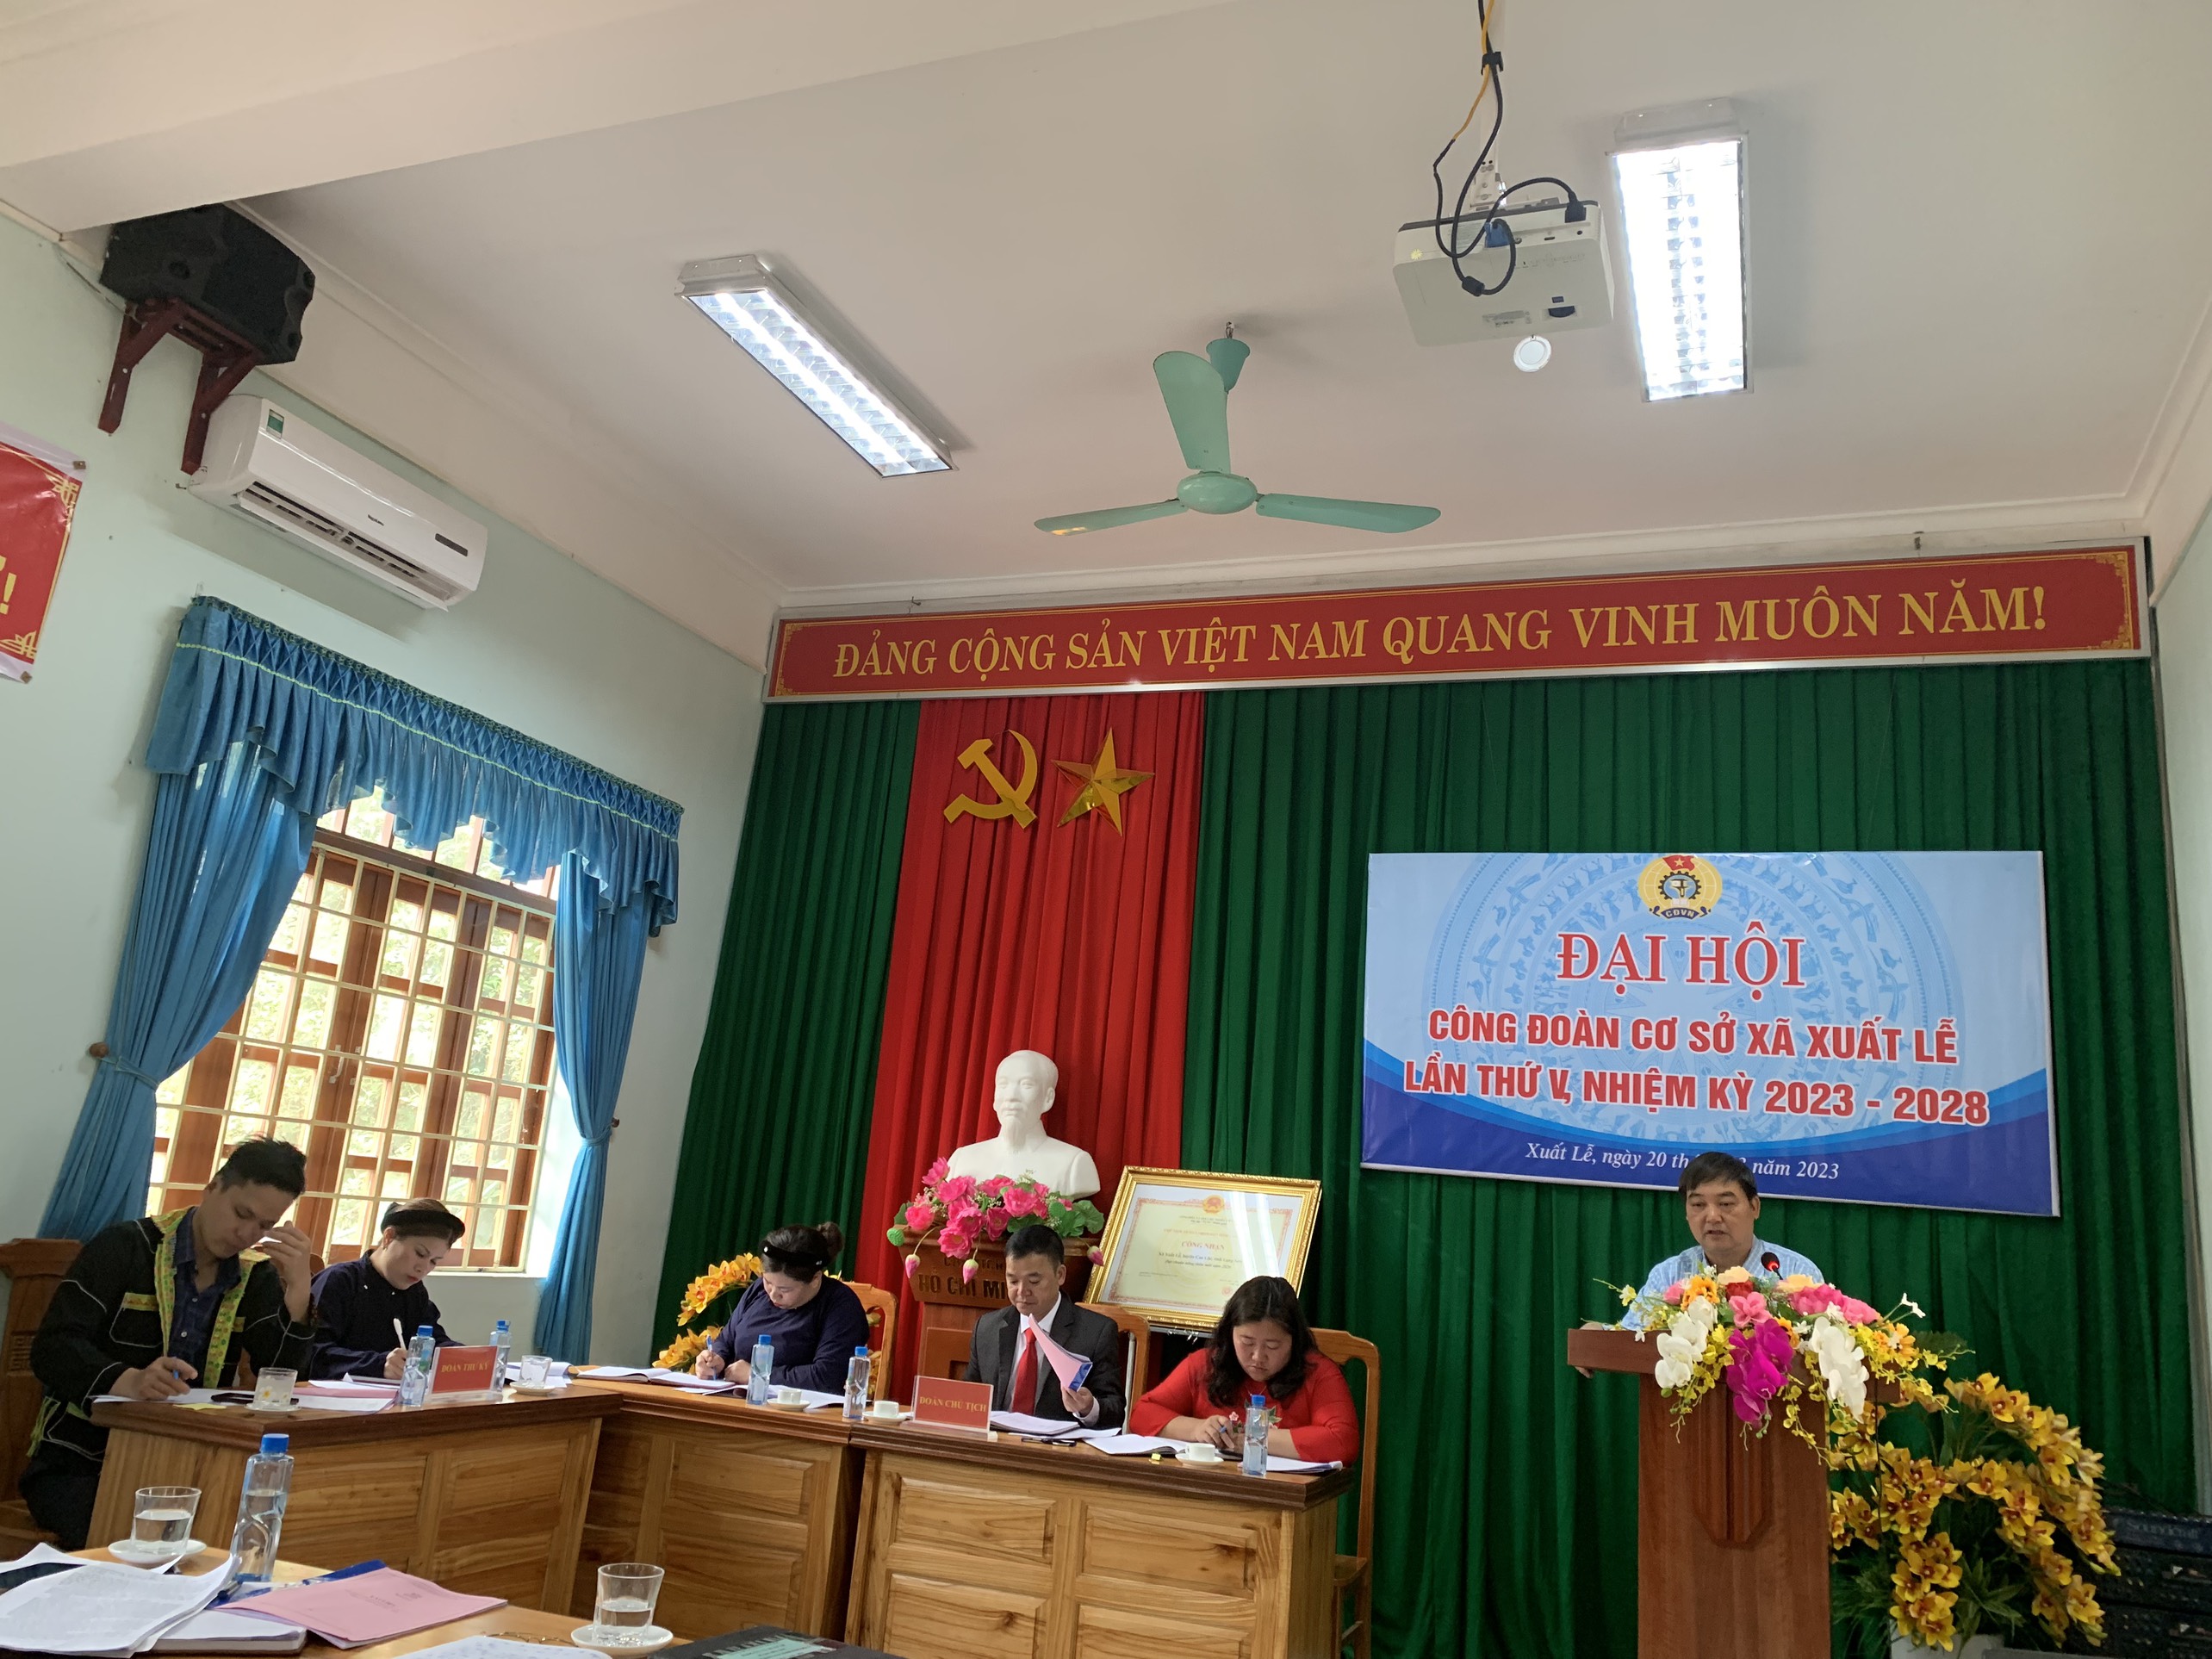 Đồng chí Lương Văn Mai – Bí thư Đảng ủy phát biểu chỉ đạo Đại hội.